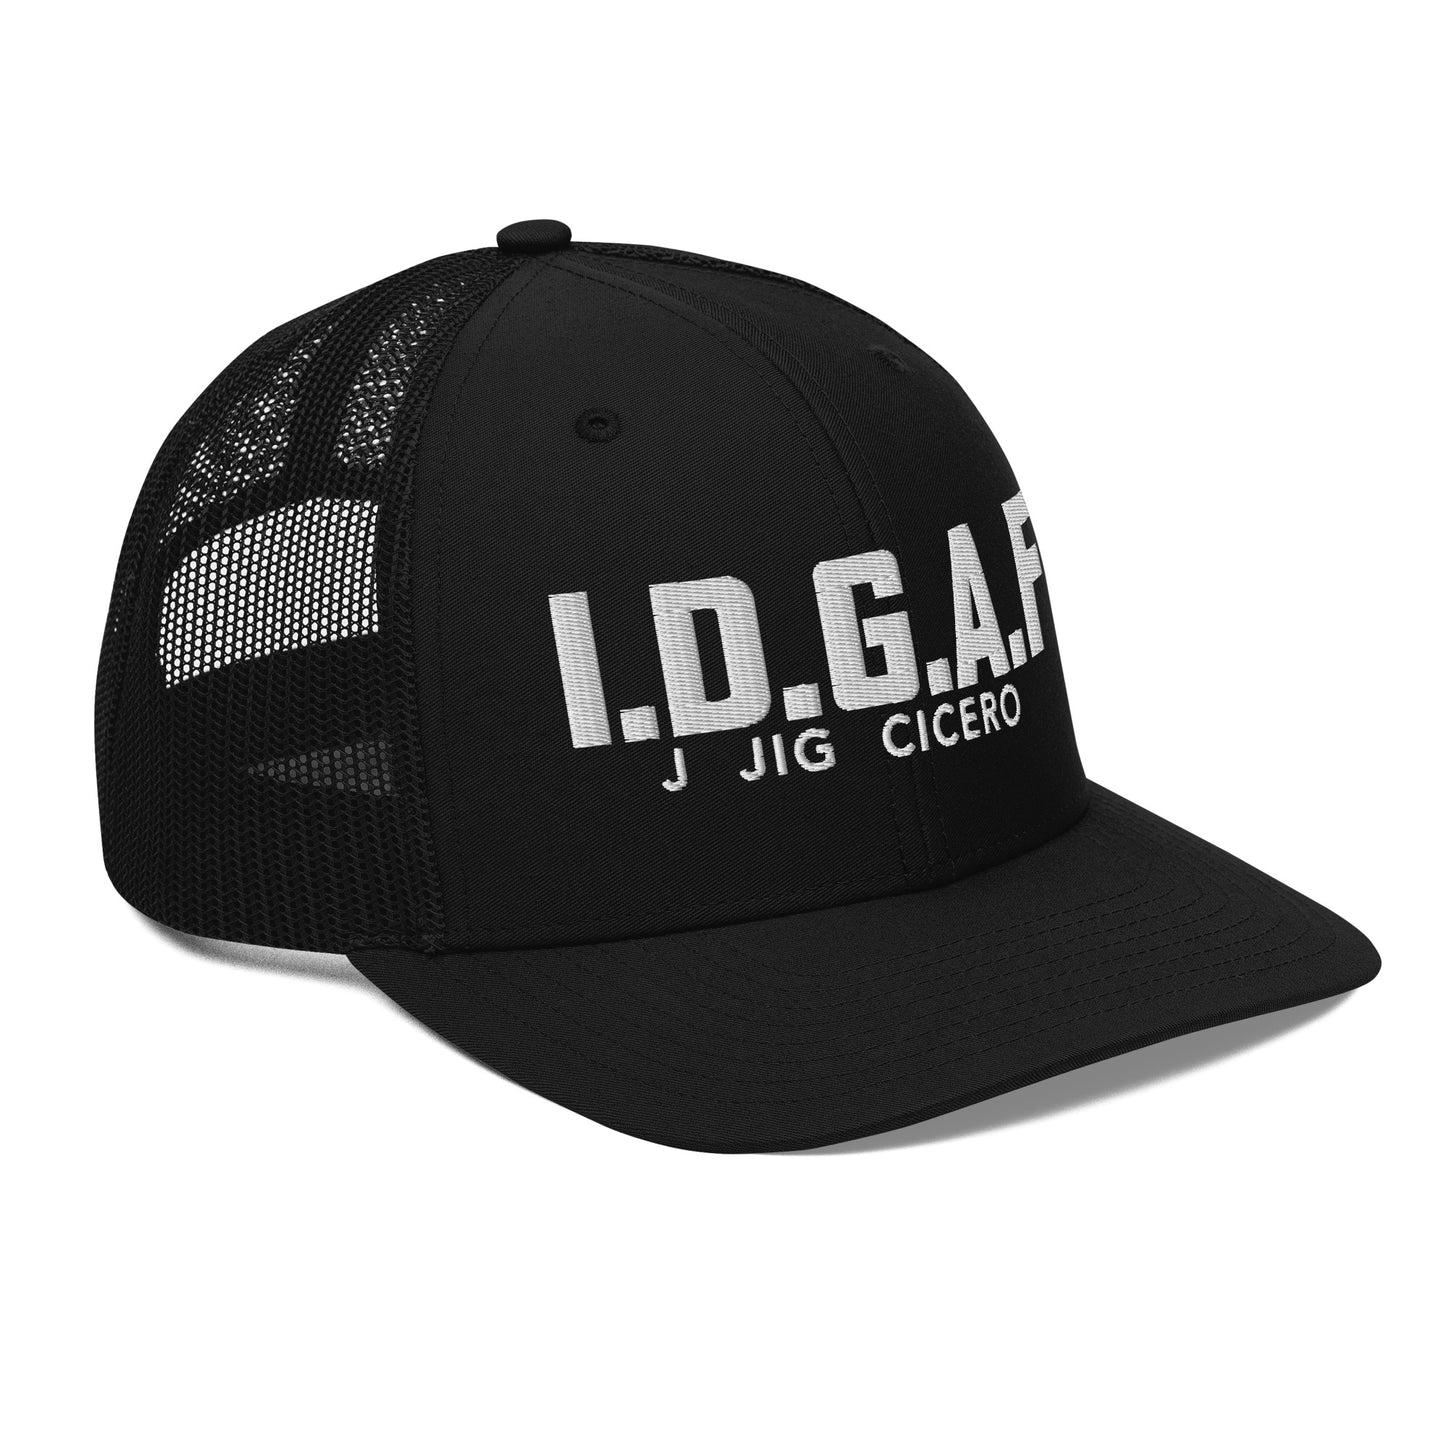 Flagship IDGAF Trucker